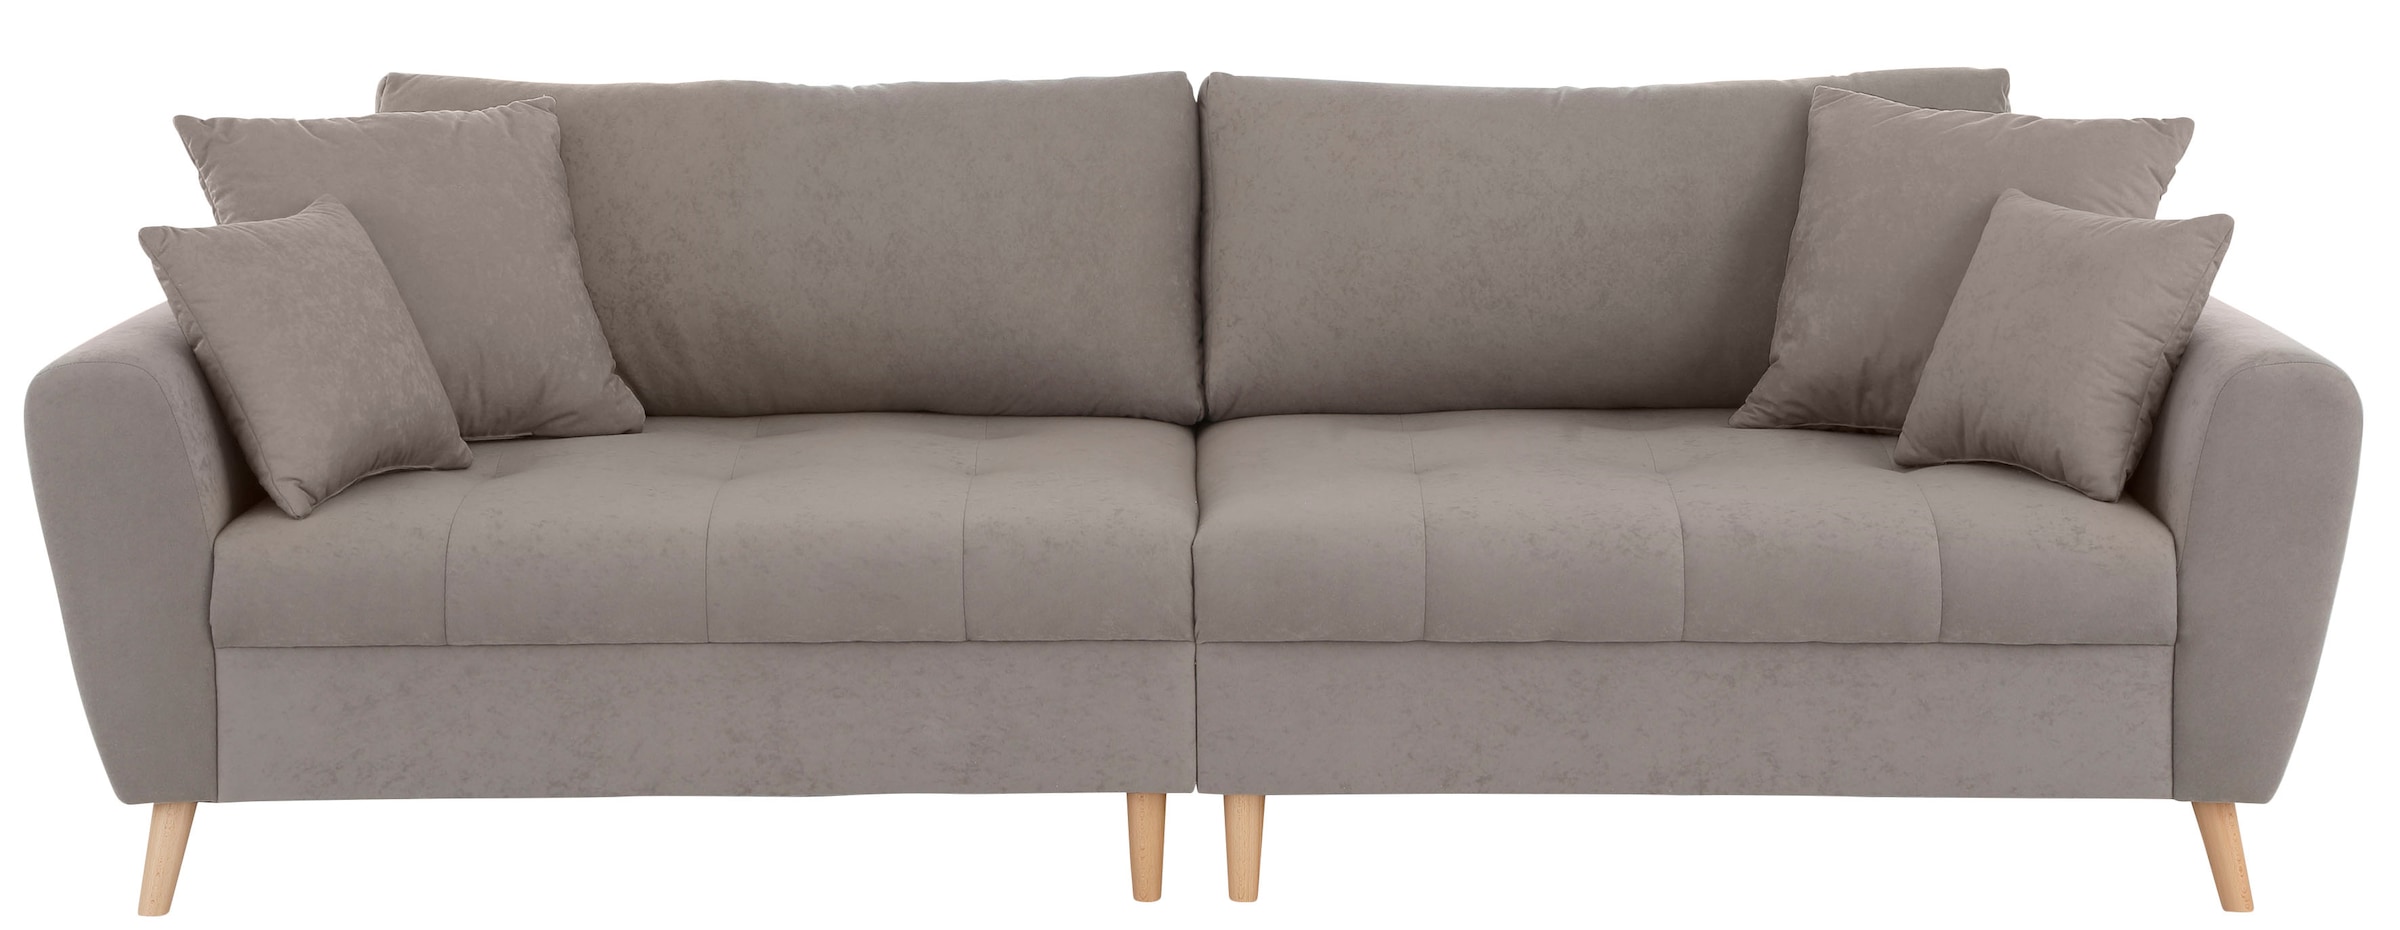 Home affaire Big-Sofa »Penelope Luxus«, mit besonders hochwertiger Polsterung für bis zu 140 kg pro Sitzfläche